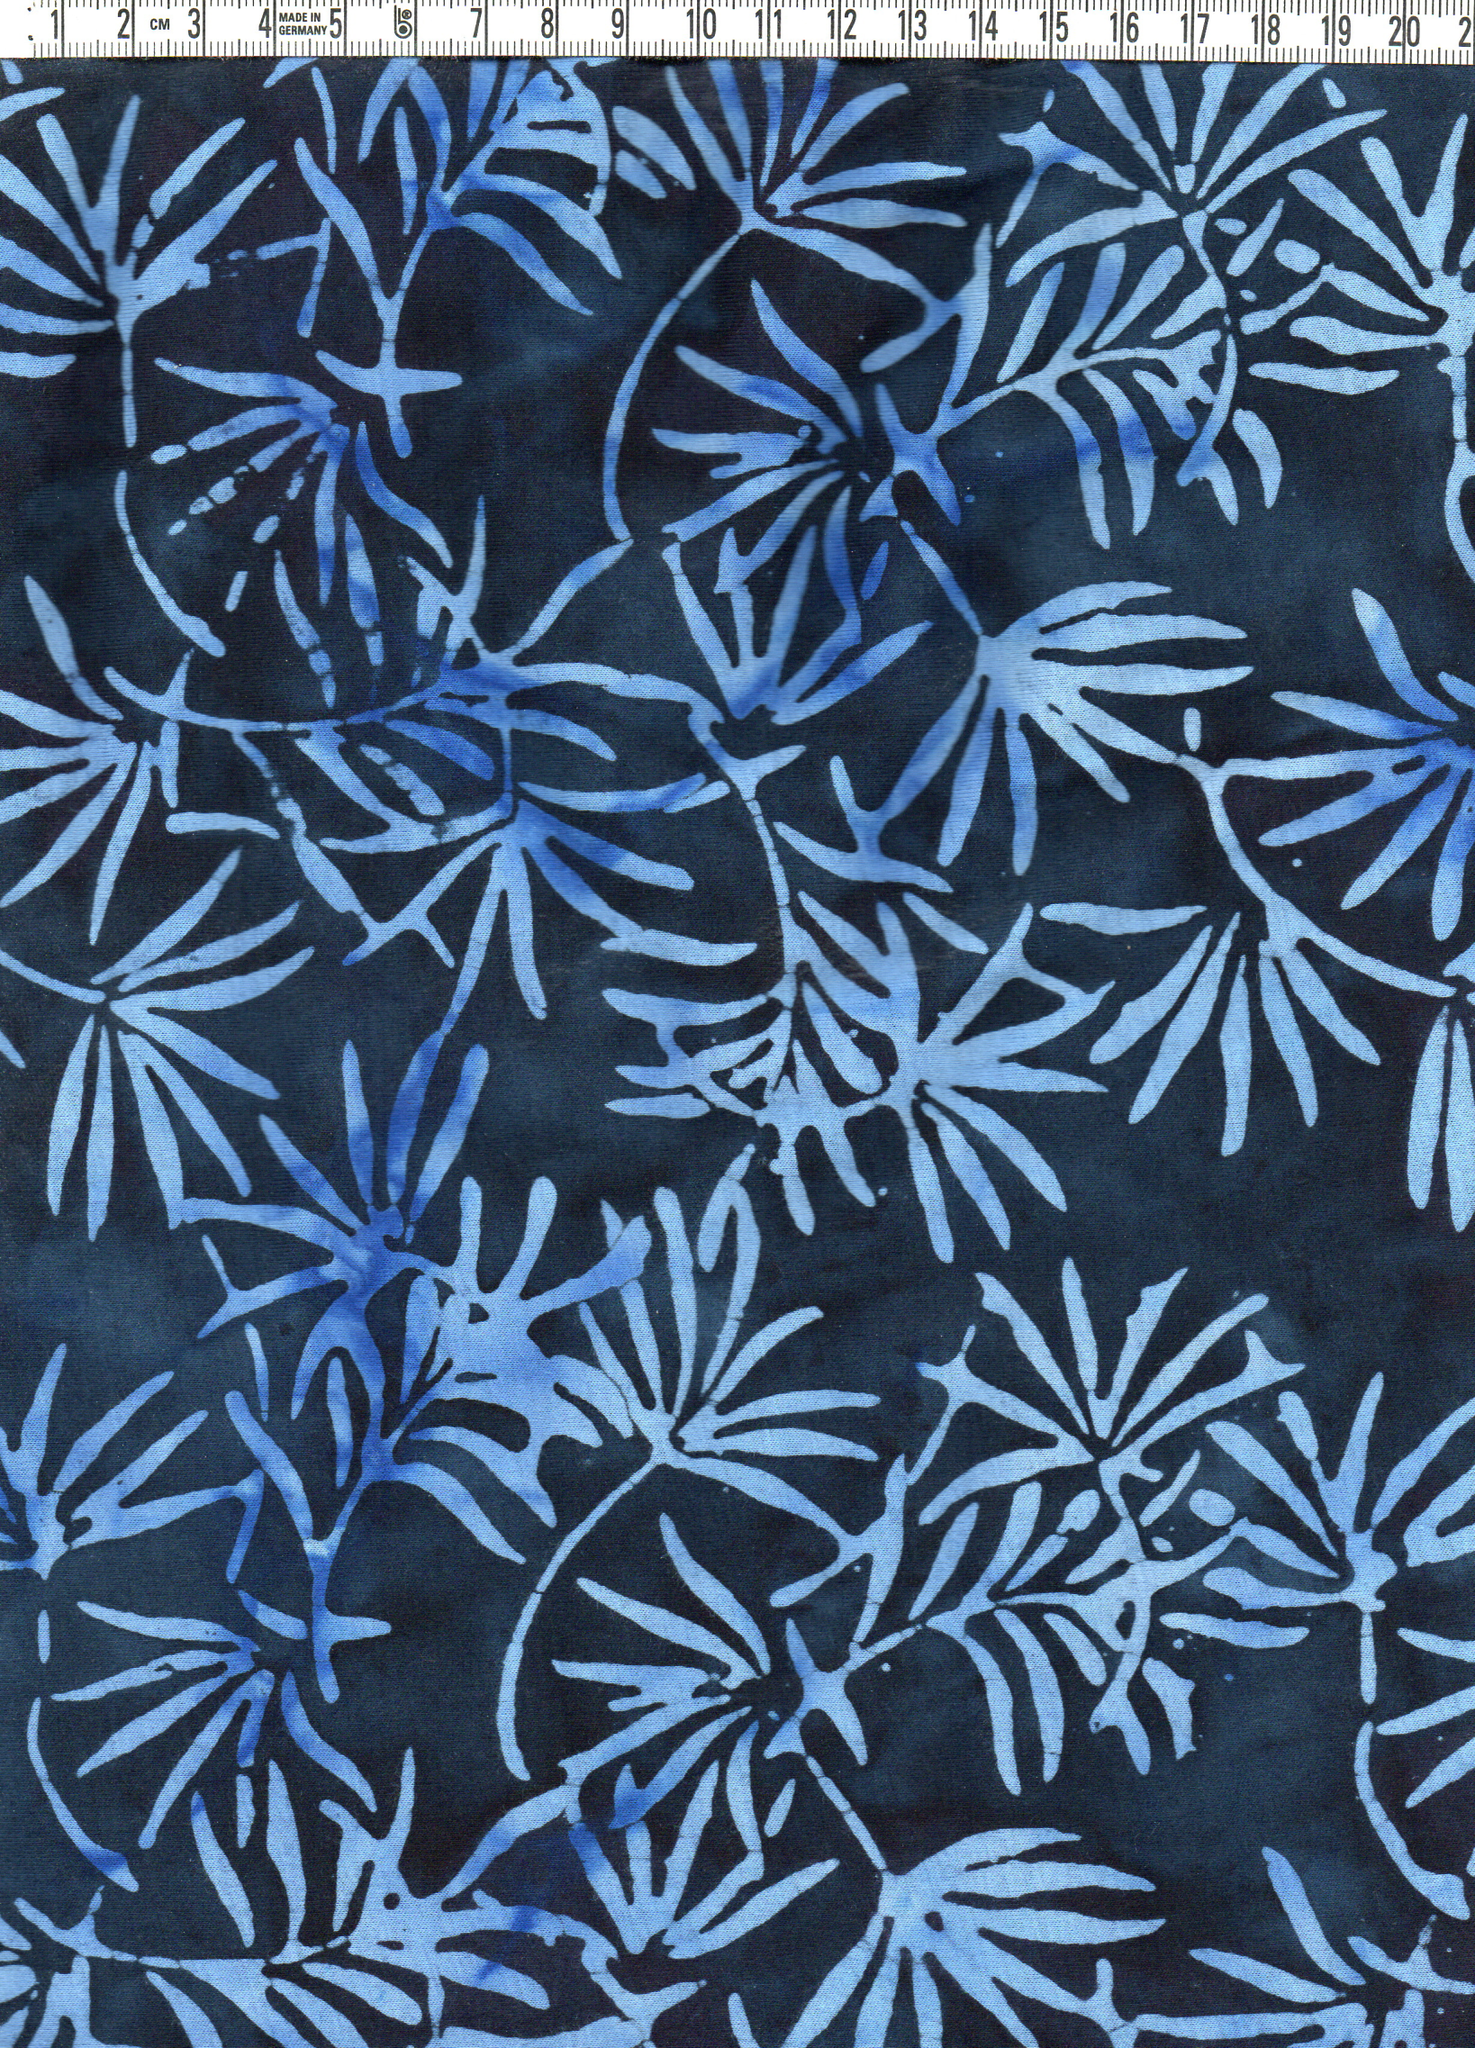 Mörkblåmelerad & blå växter. 100% bomull. Bredd 135 cm